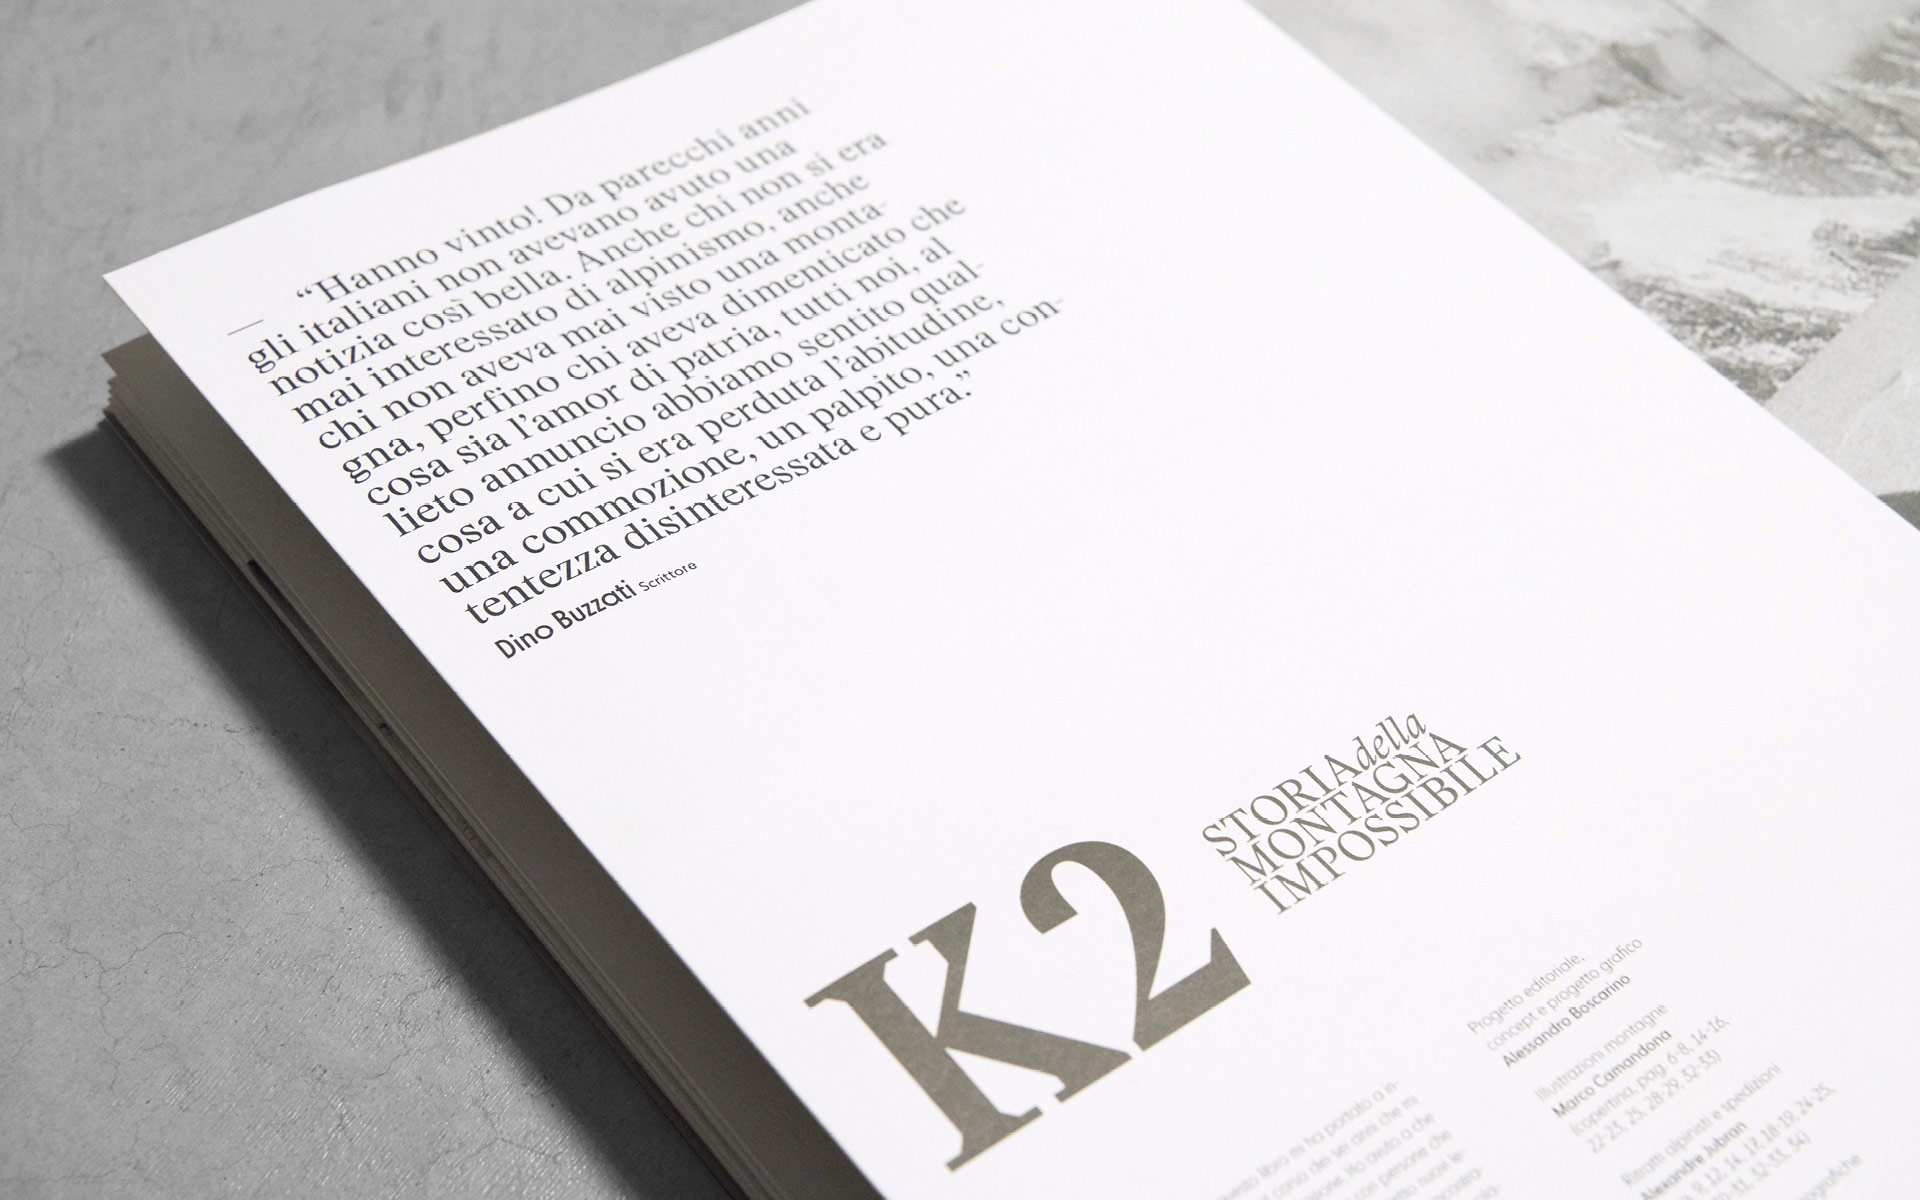 Dettagli del libro 'K2 Storia della Montagna Impossibile' pubblicato da Rizzoli Lizard